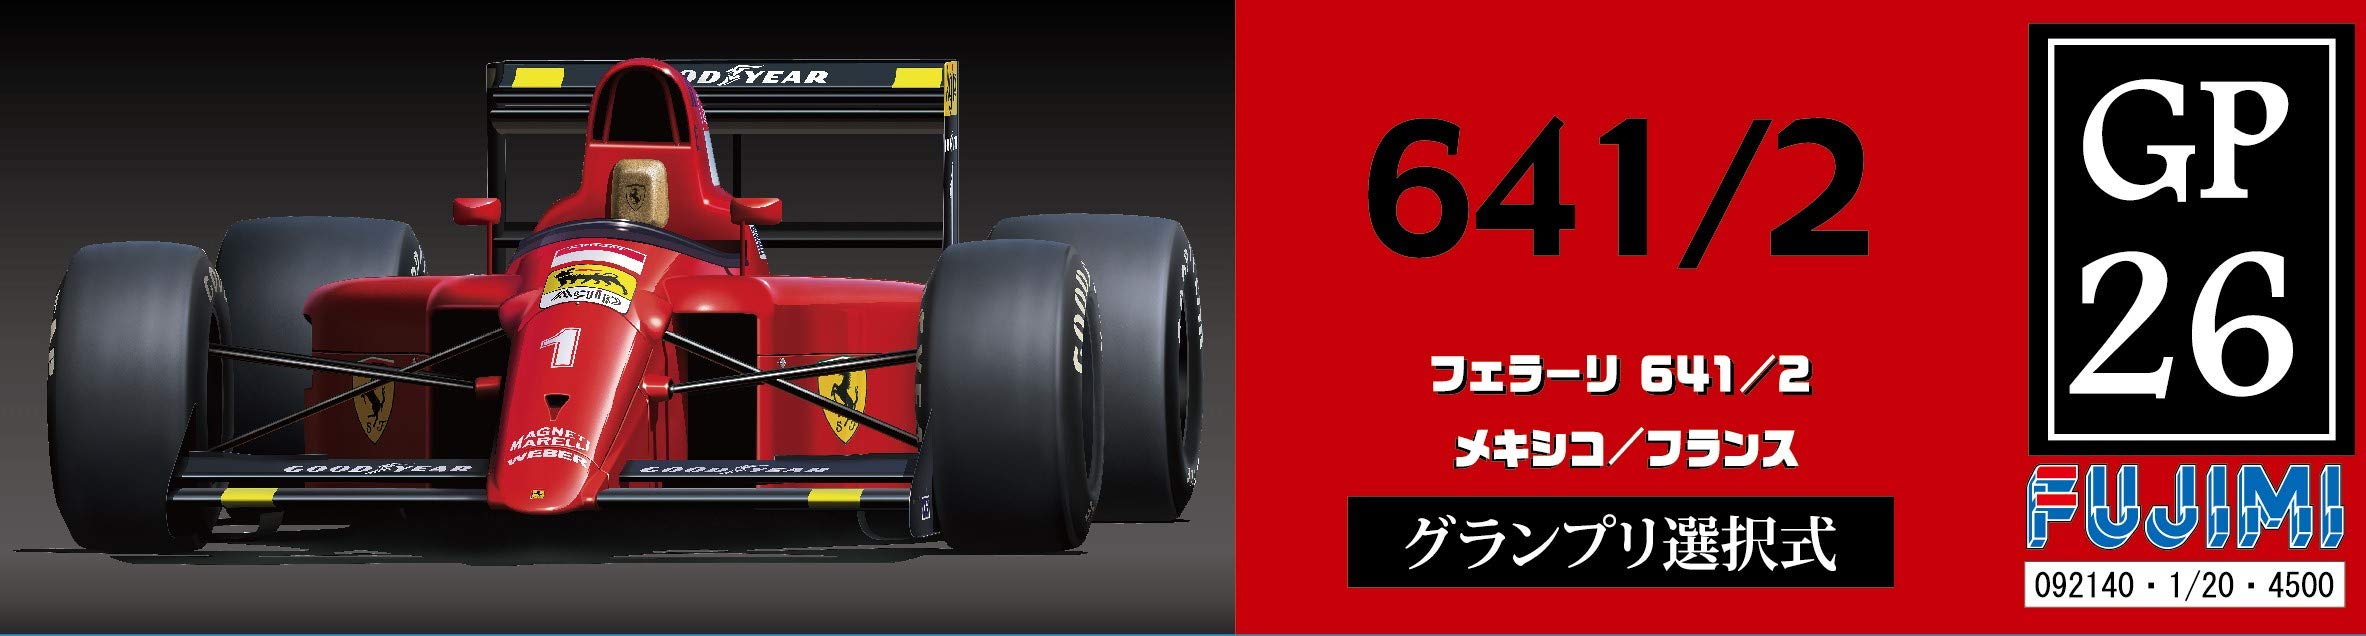 Fujimi Gp26 Ferrari 641/2 (Mexico Gp / France Gp) 1/20 Kit de voiture de course à l'échelle japonaise